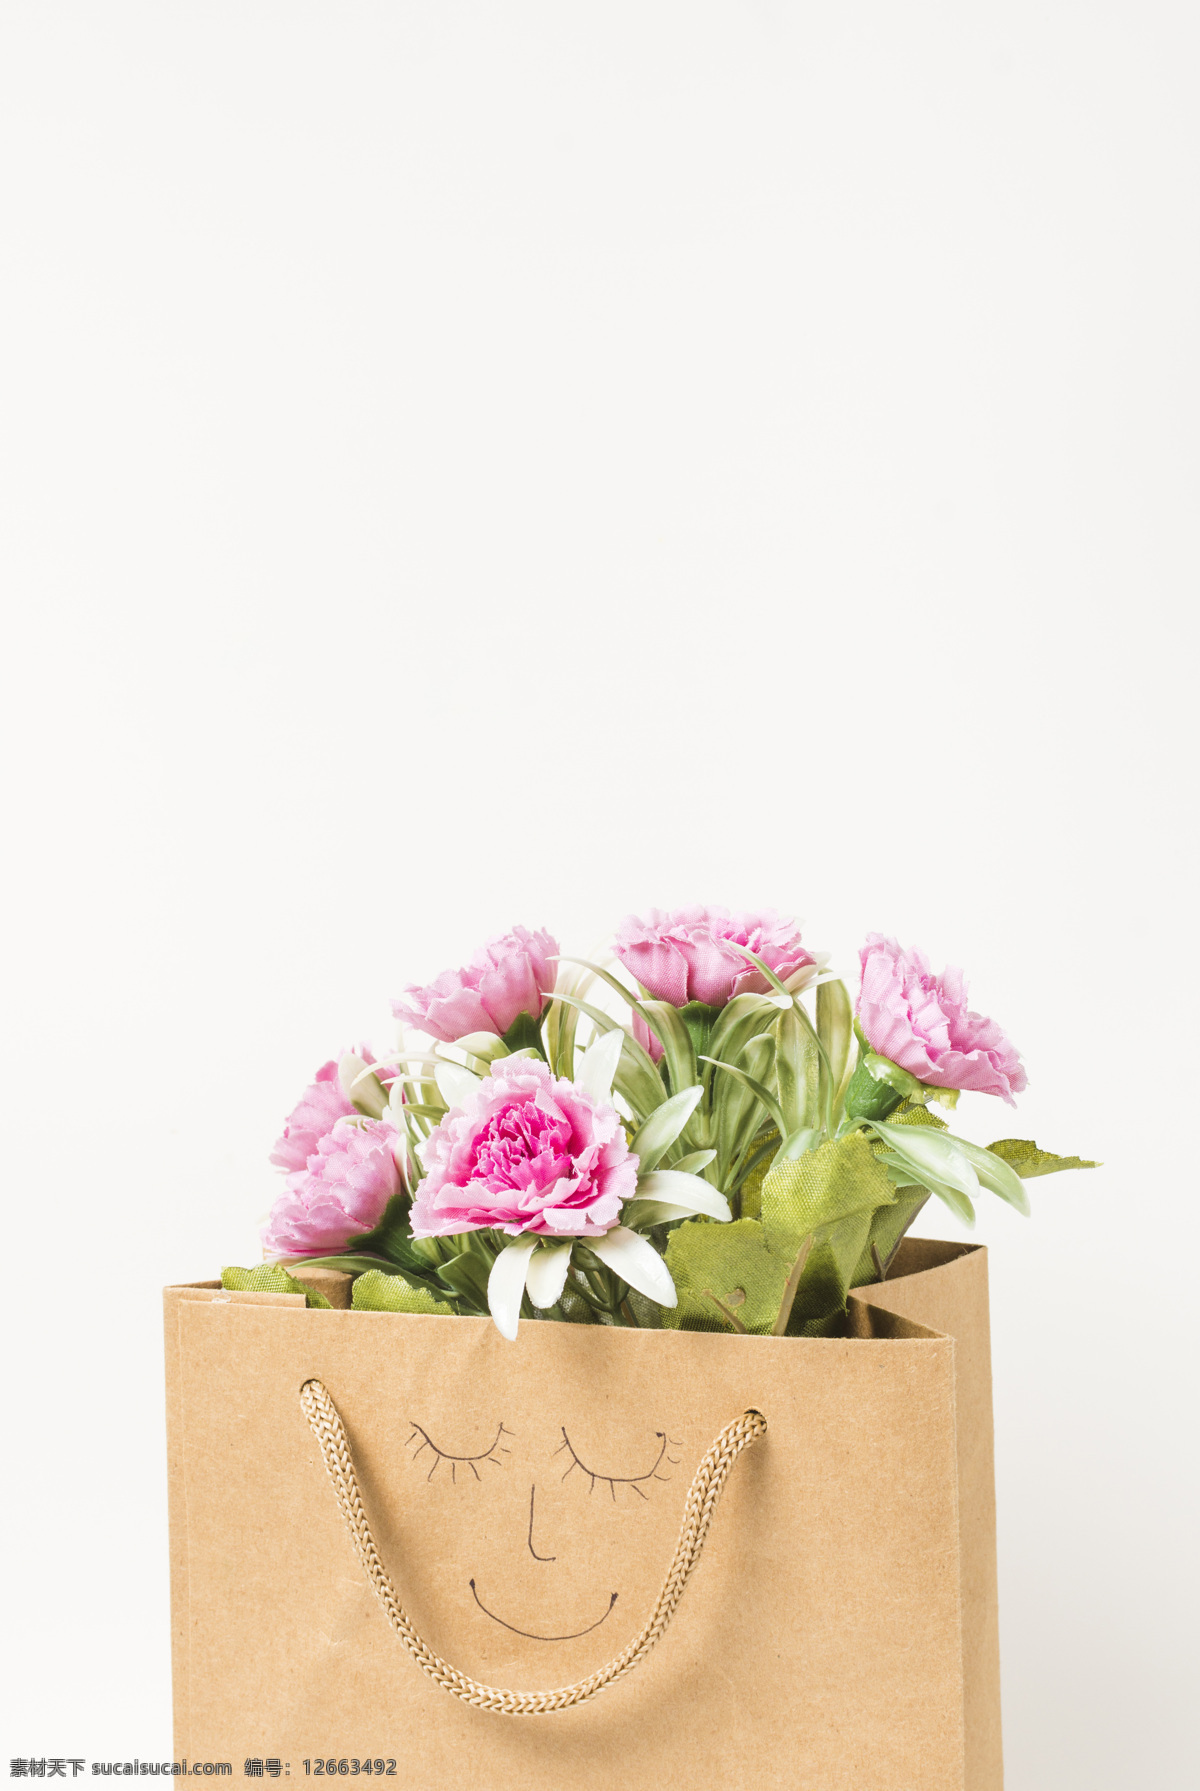 康乃馨 花束 母亲节 礼物 康乃馨花束 盛开的康乃馨 粉红色 花卉 植物 背景